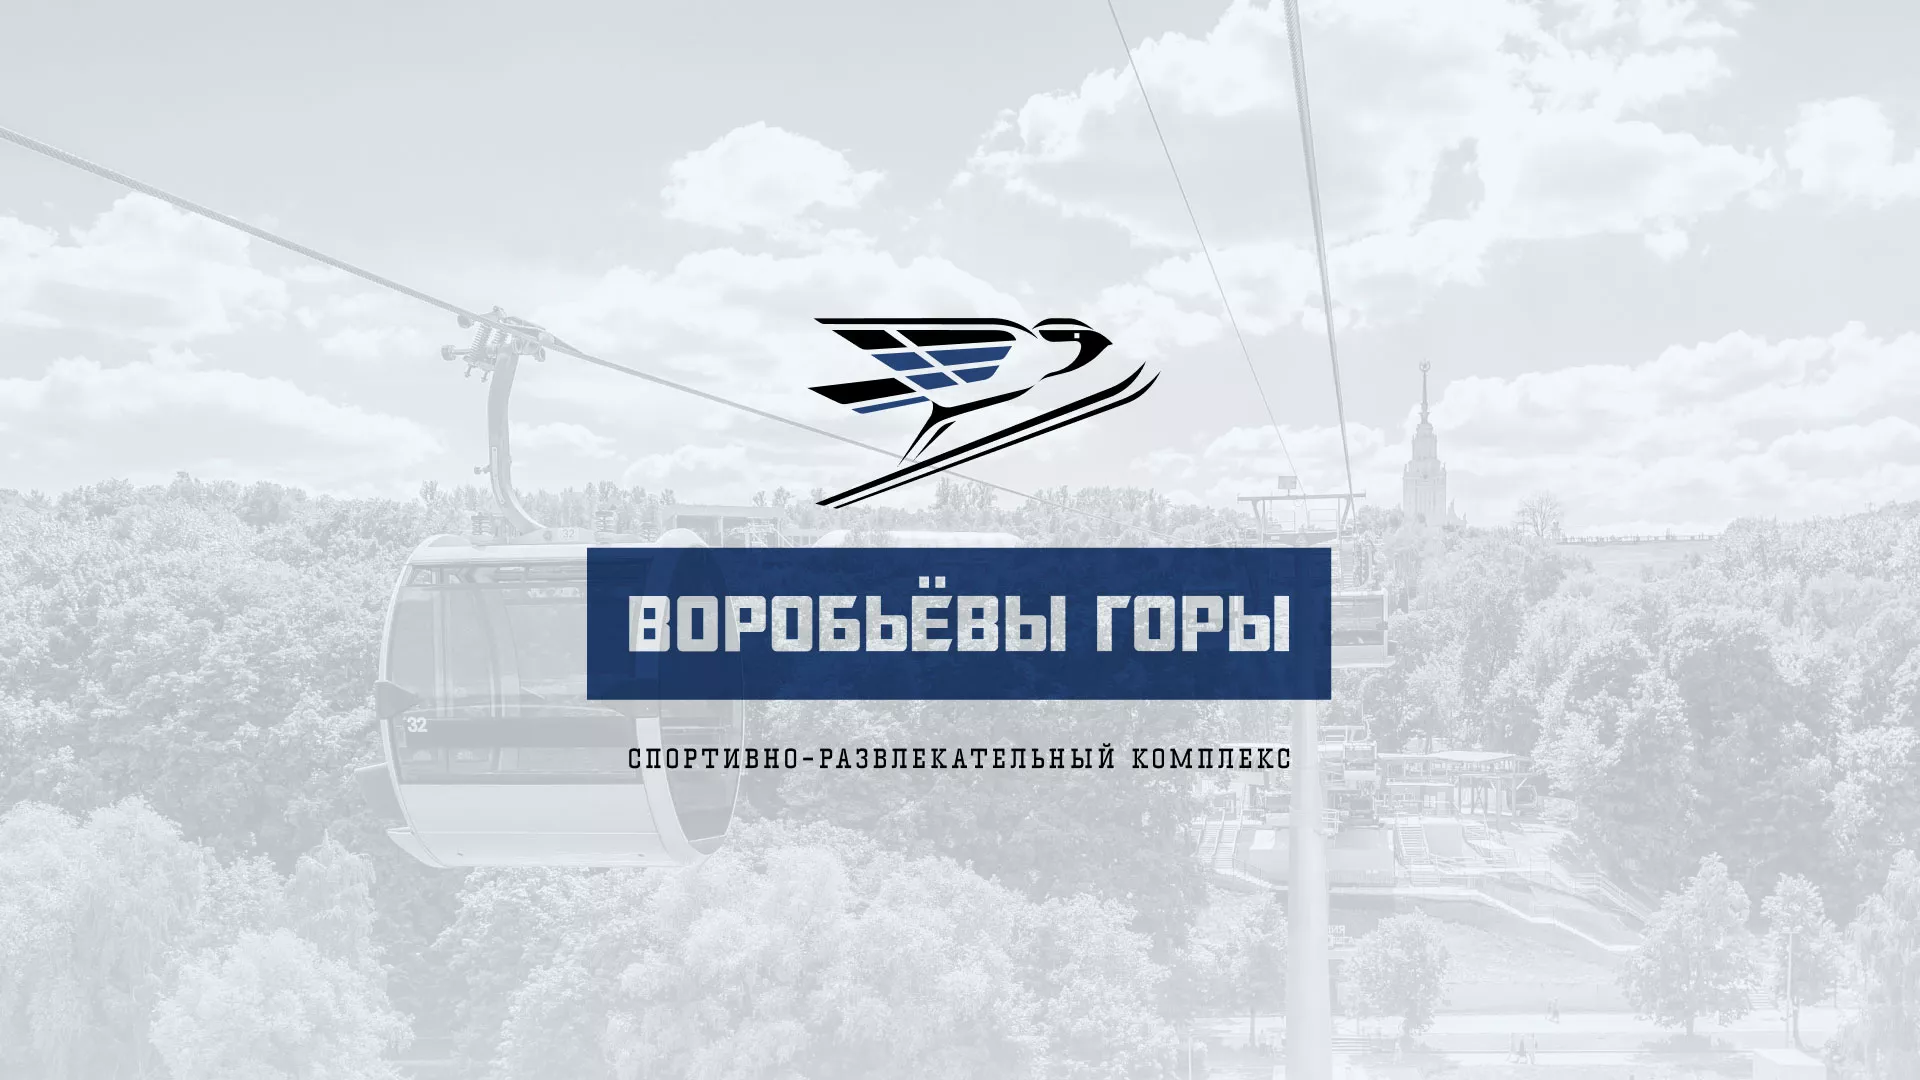 Разработка сайта в Старой Руссе для спортивно-развлекательного комплекса «Воробьёвы горы»